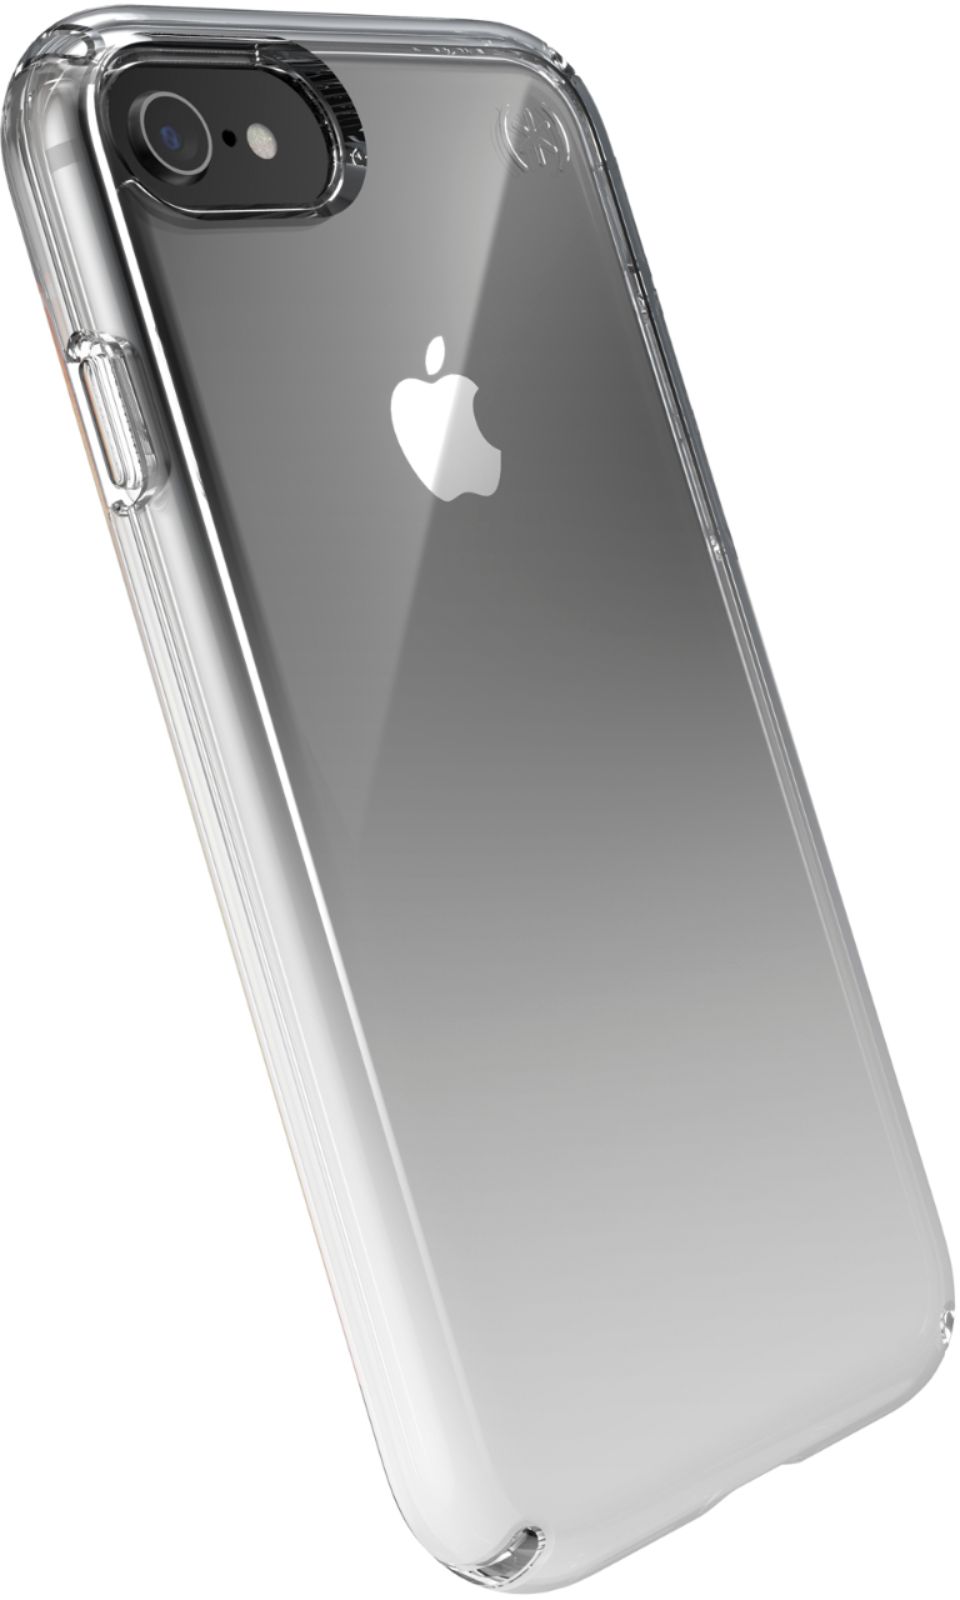 スマートフォン/携帯電話 スマートフォン本体 Best Buy: Speck Presidio® Perfect-Clear Case for iPhone 8/7 Clear 